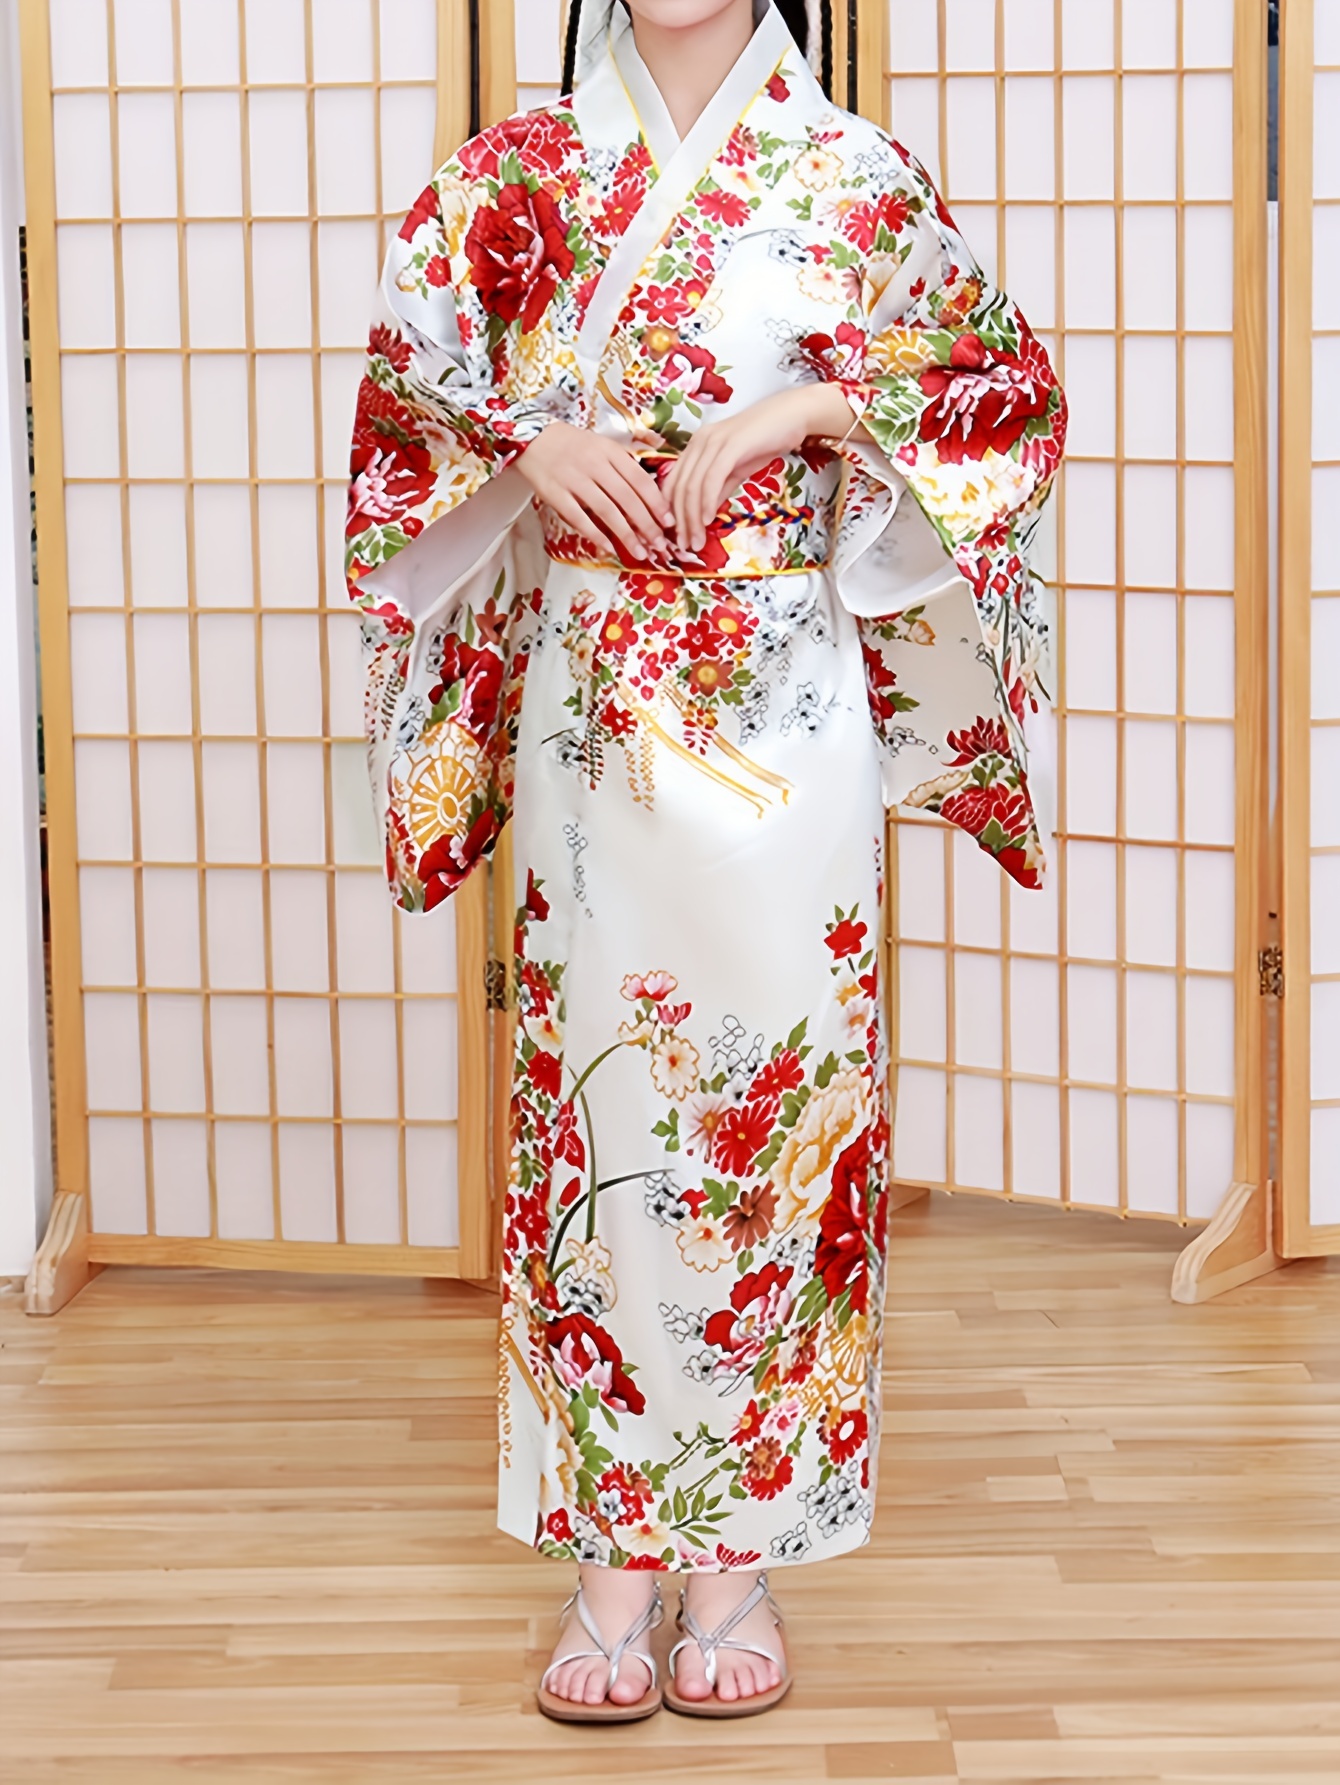 Male Men's kimono traditional Japanese Warrior Kimono Yukata men Bathrobes  anime cosplay costumes clothing set costumes